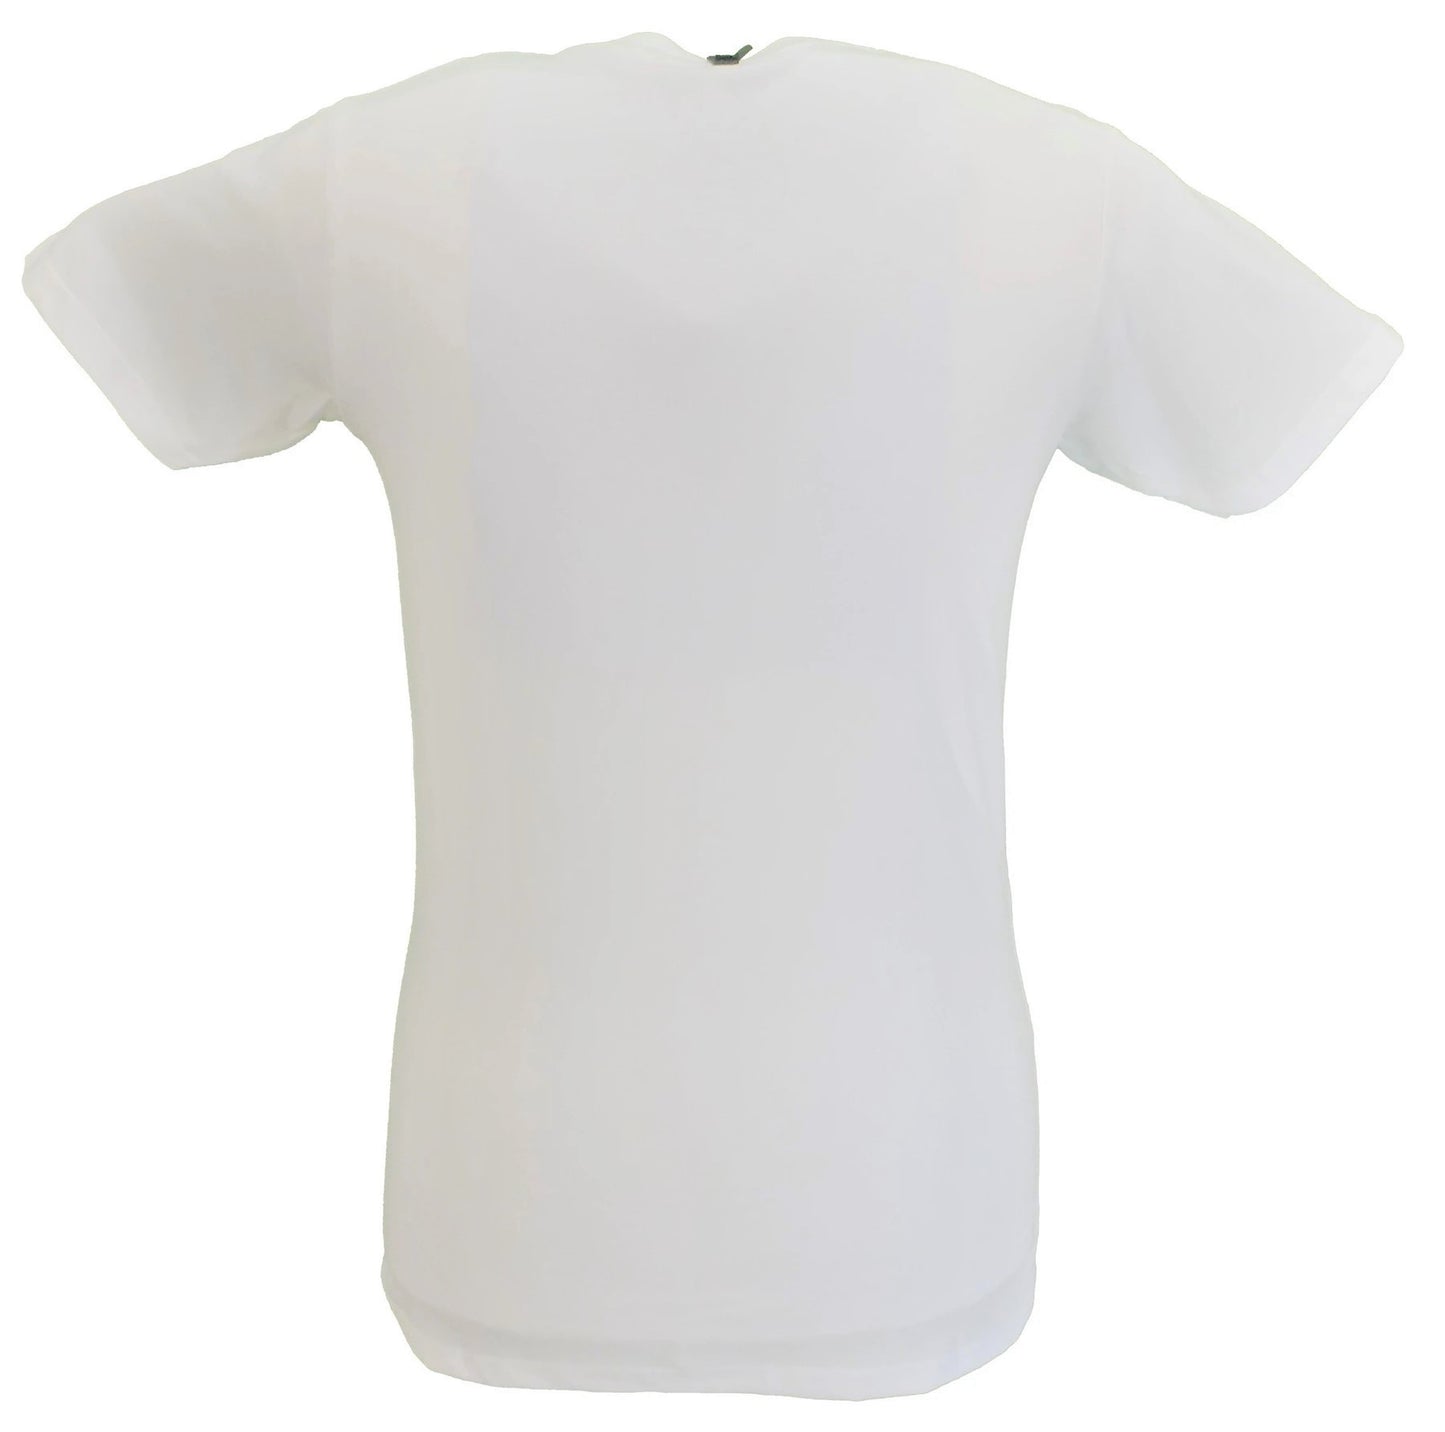 Weißes offizielles Herren-T-Shirt mit kleinem Gesichter-Logo